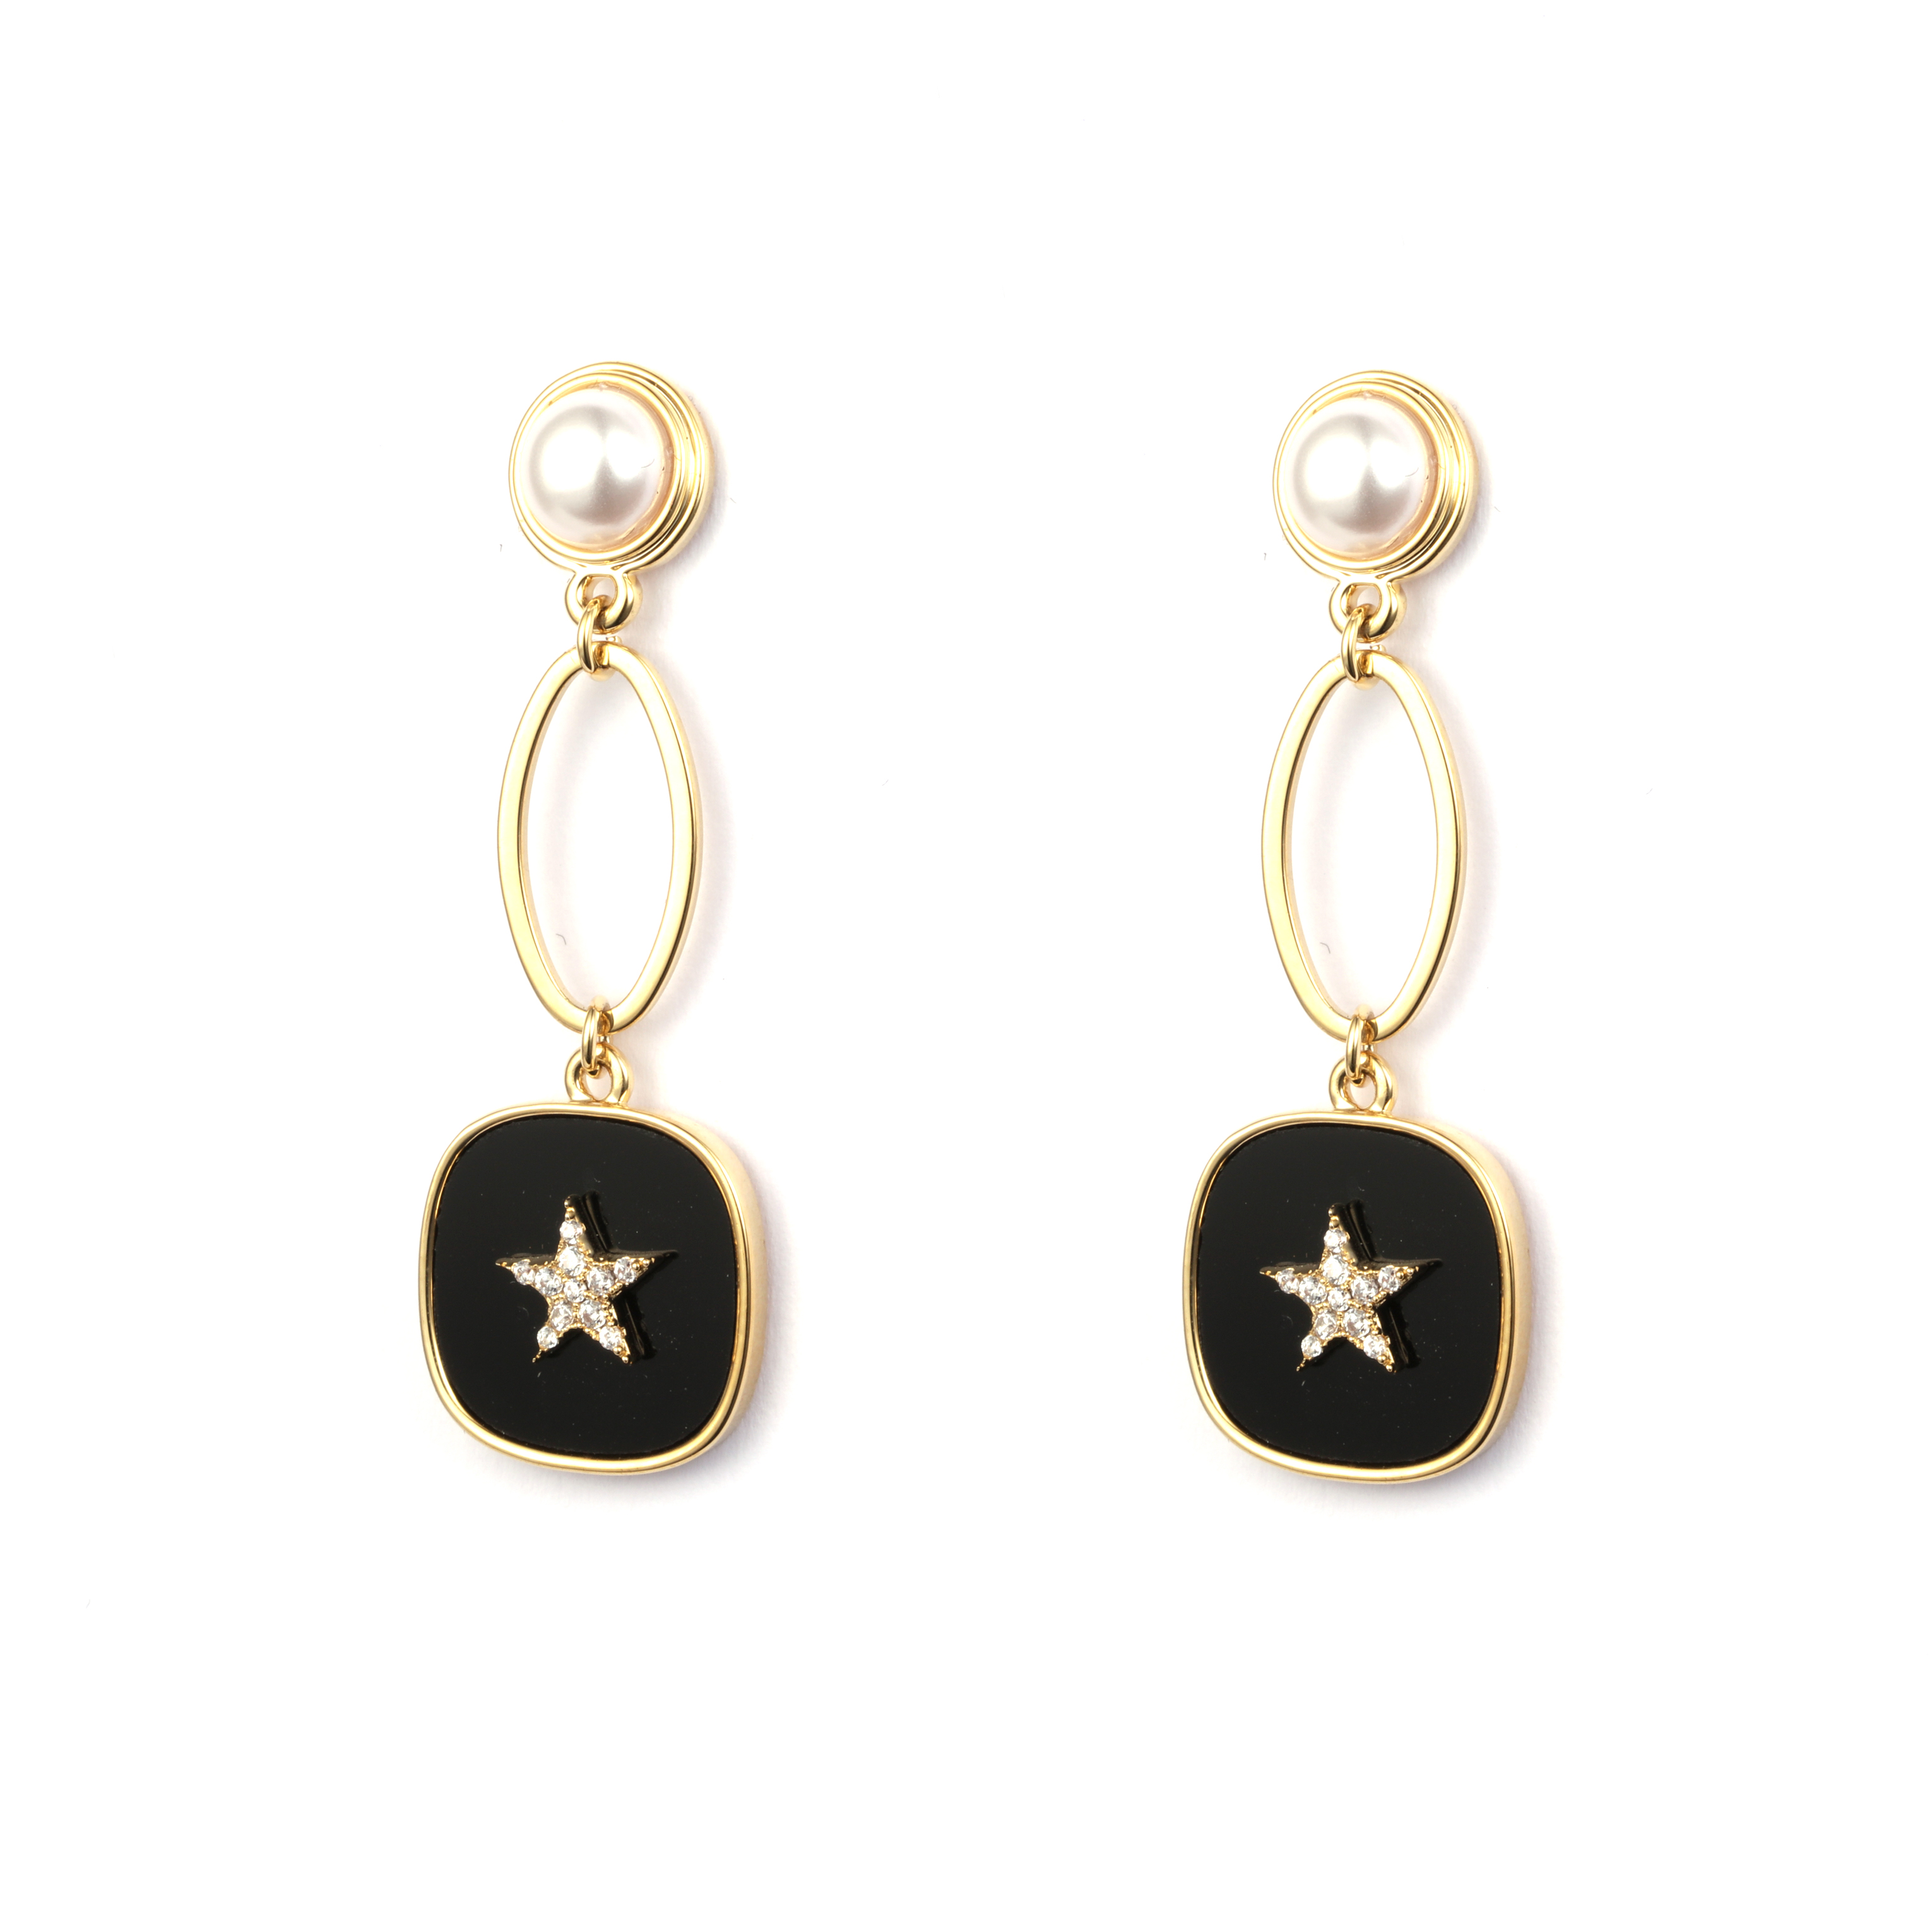 Mode-Ohrringe mit emaillierten Perlen und CZ 